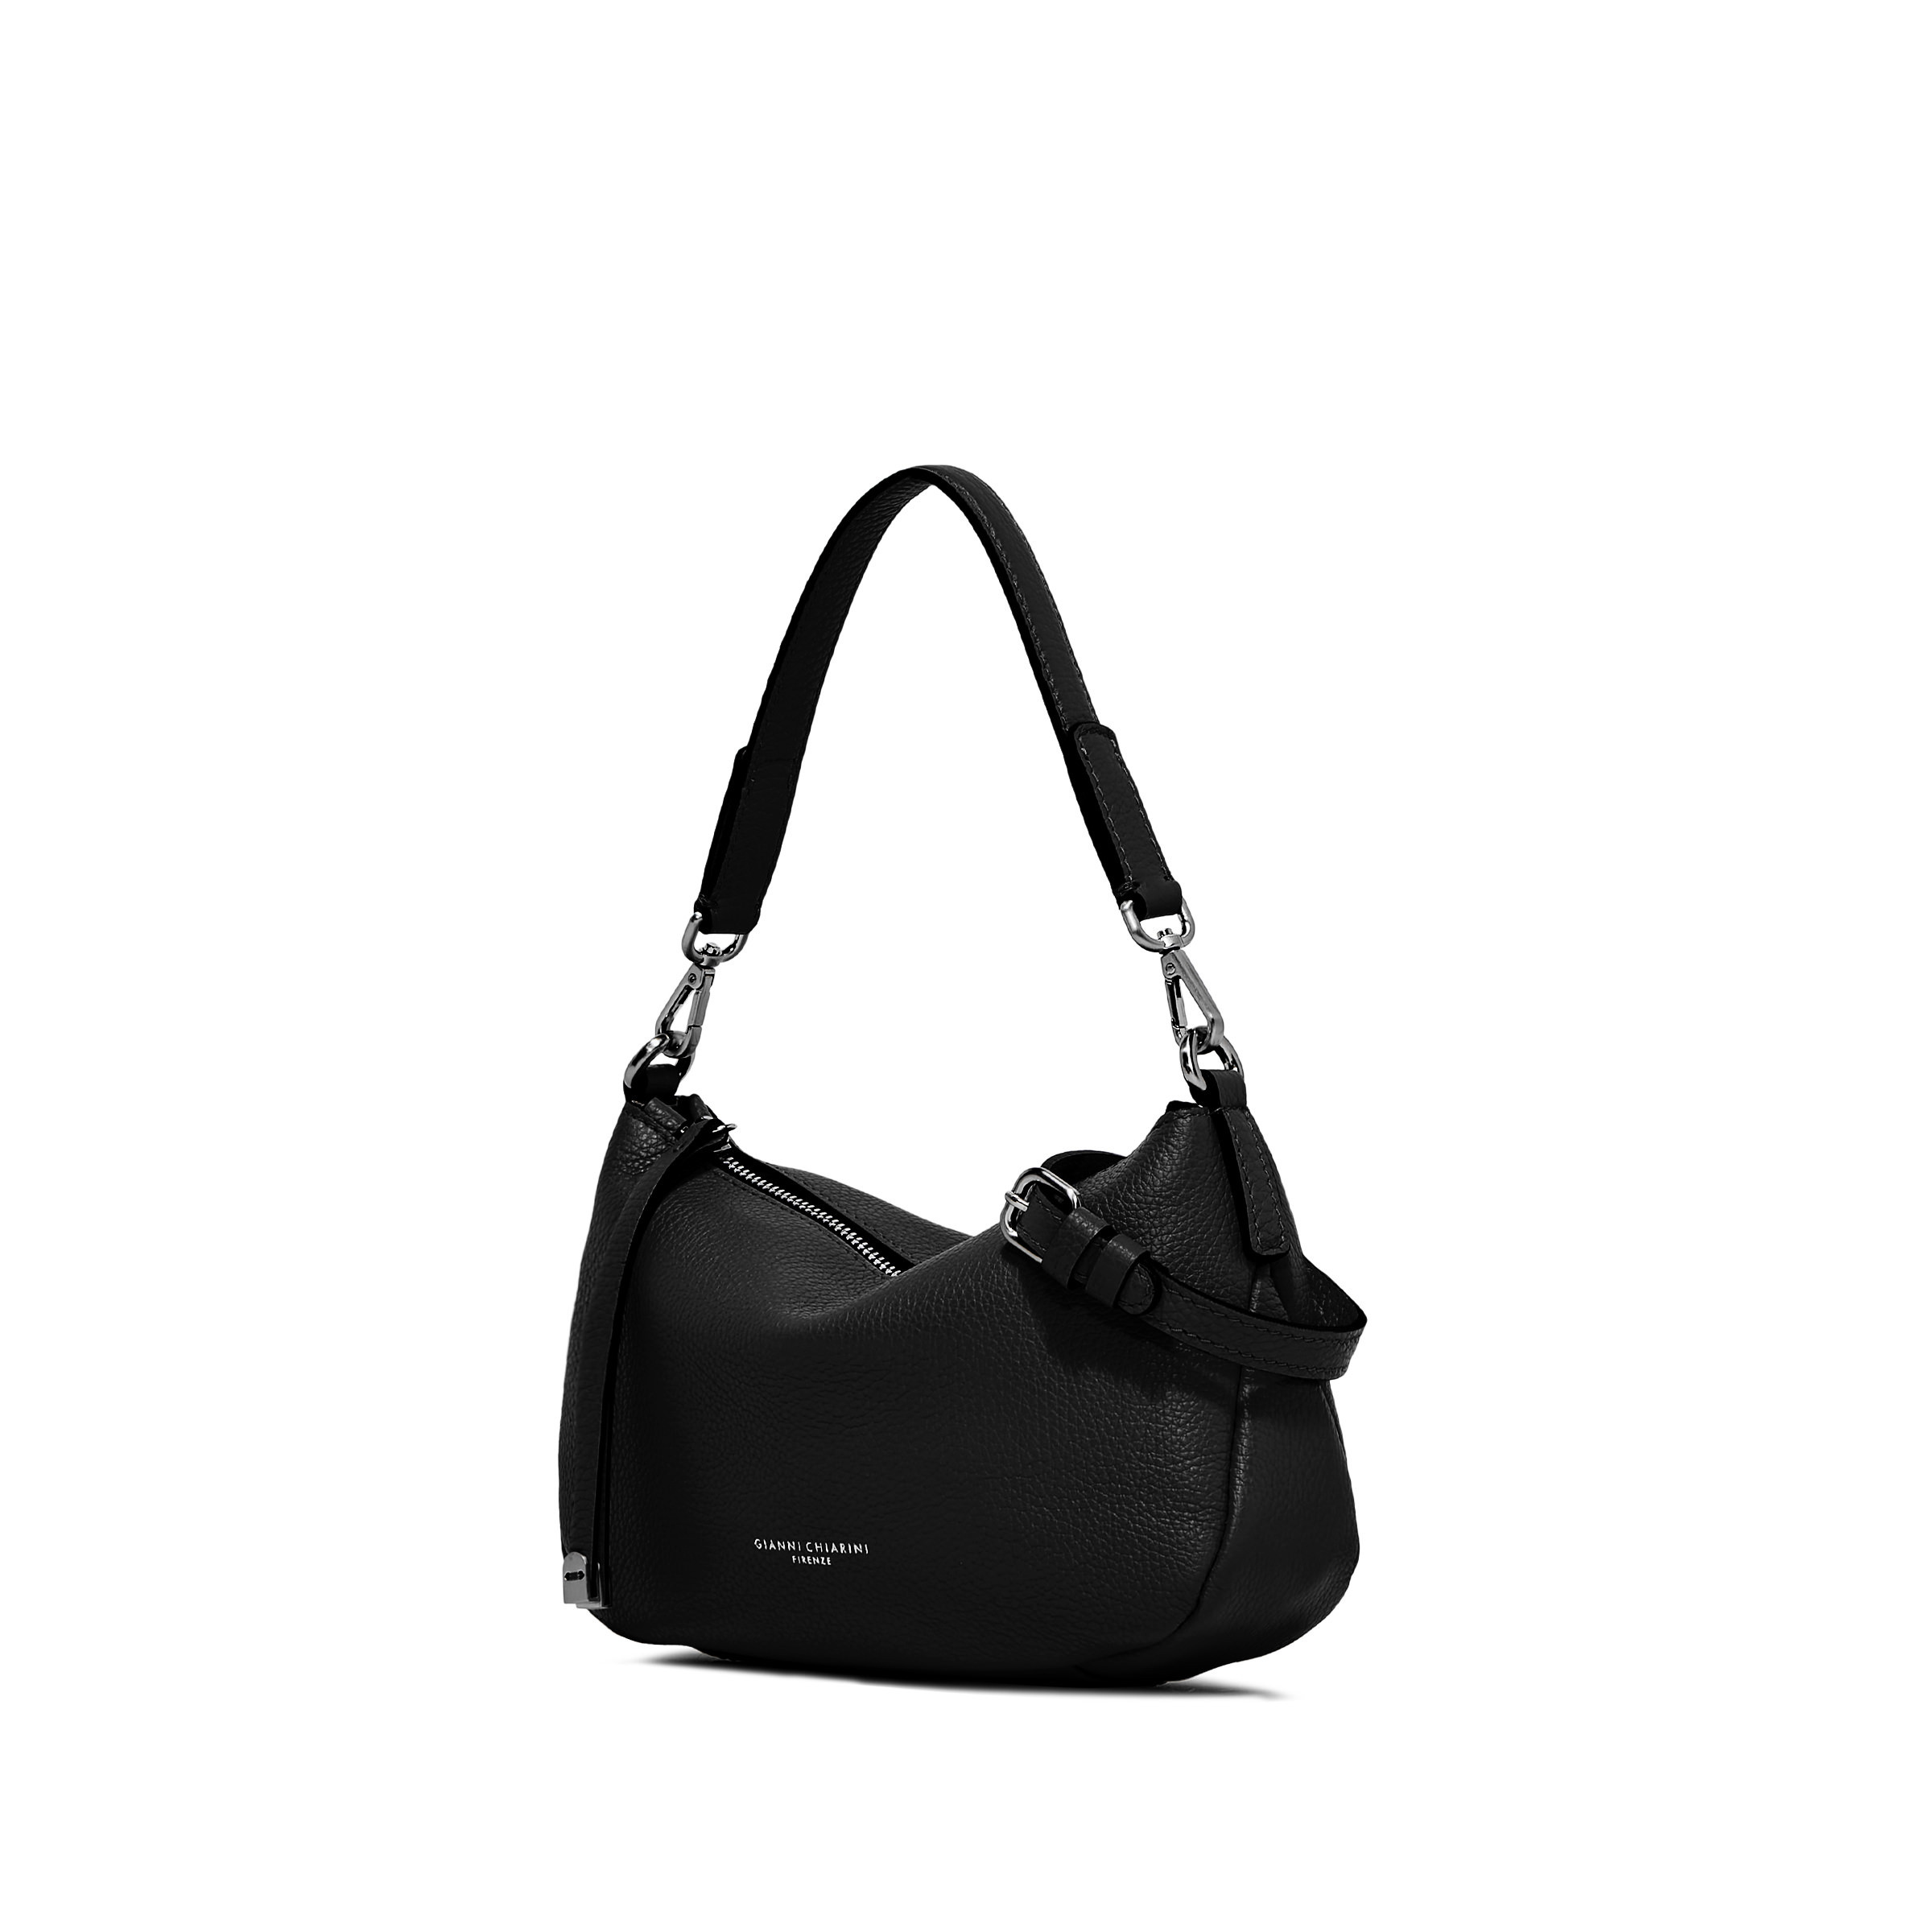 Gianni Chiarini - Nadia Leather bag, Black, large image number 2